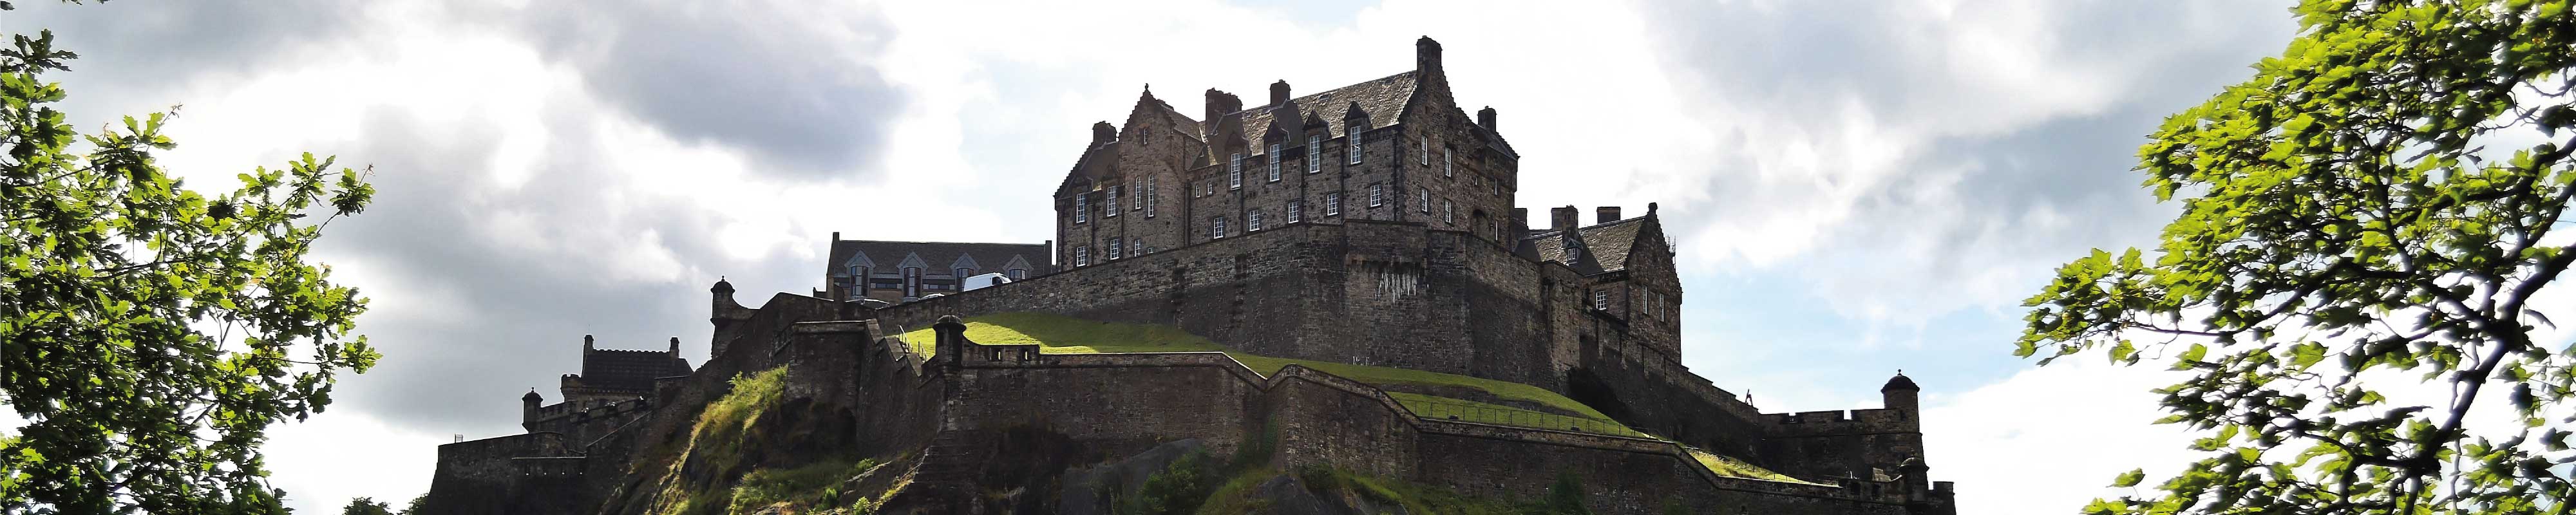 Gepäckaufbewahrung | Edinburgh Castle in Edimbourg - Nannybag